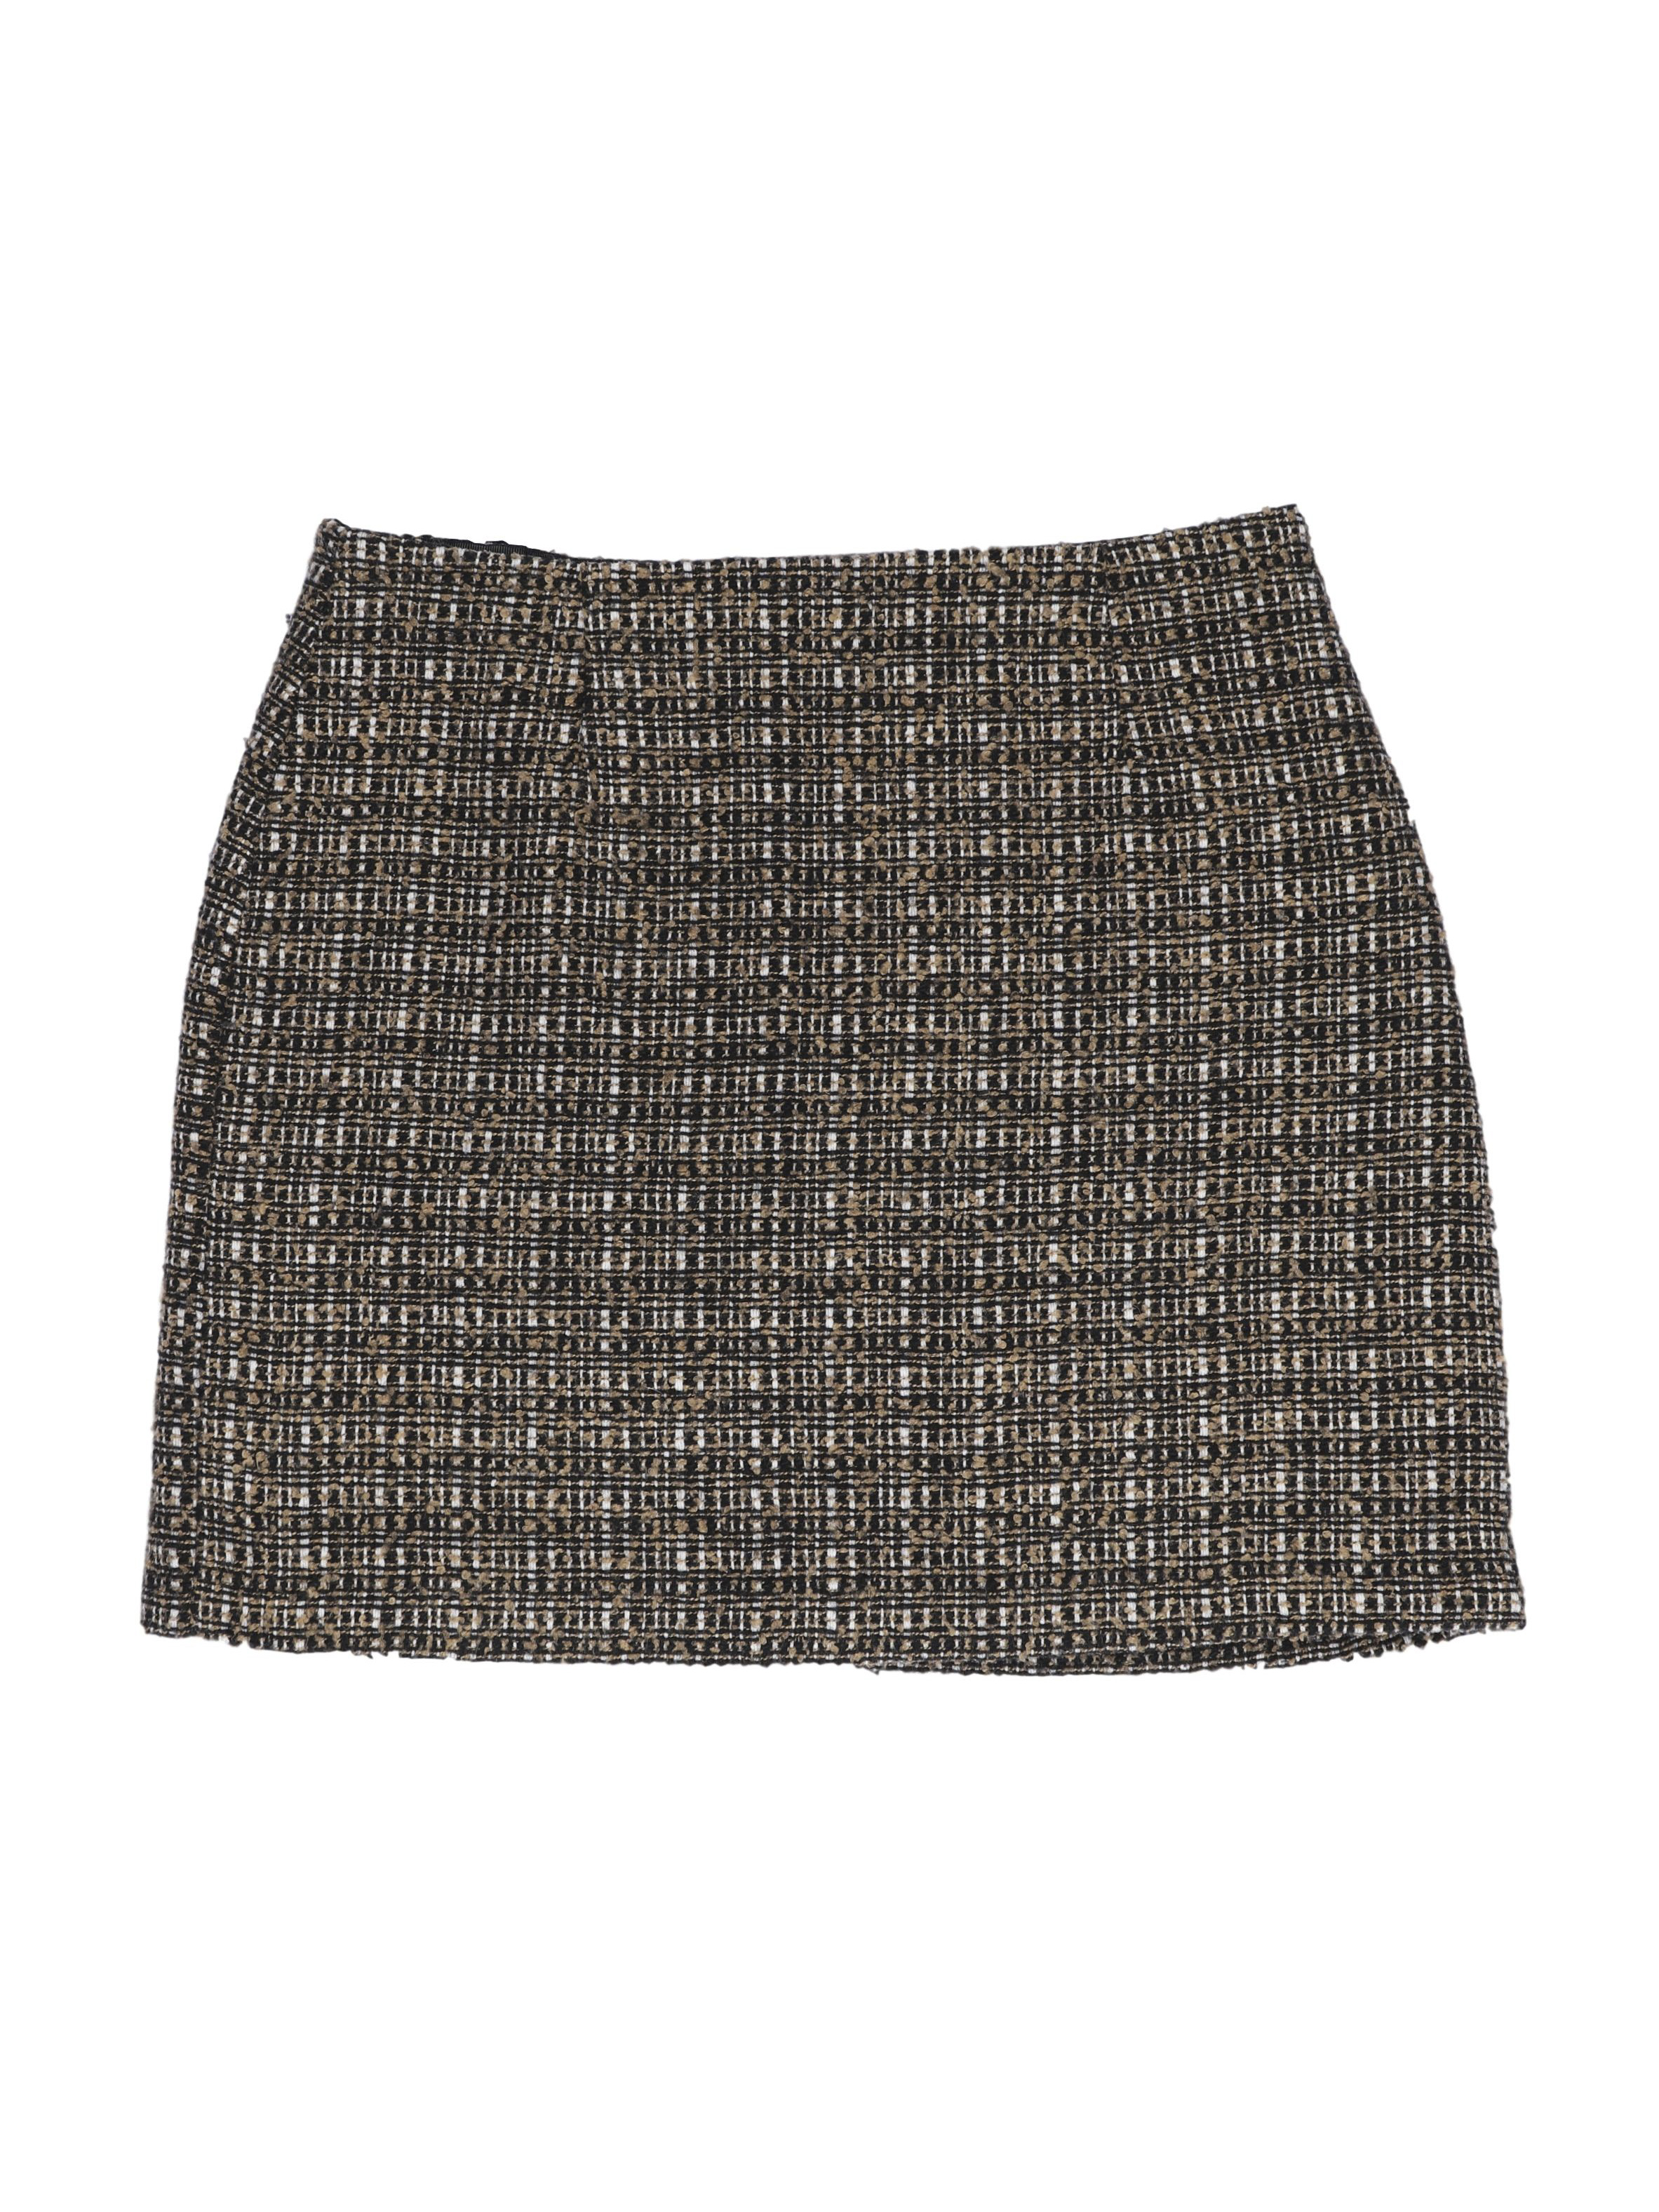 Falda mini de tweed en tonos marrones, 20% lana, forrada, con cierre y botón posterior, corte recto. Cintura 74 cm, largo 41 cm. Linda!